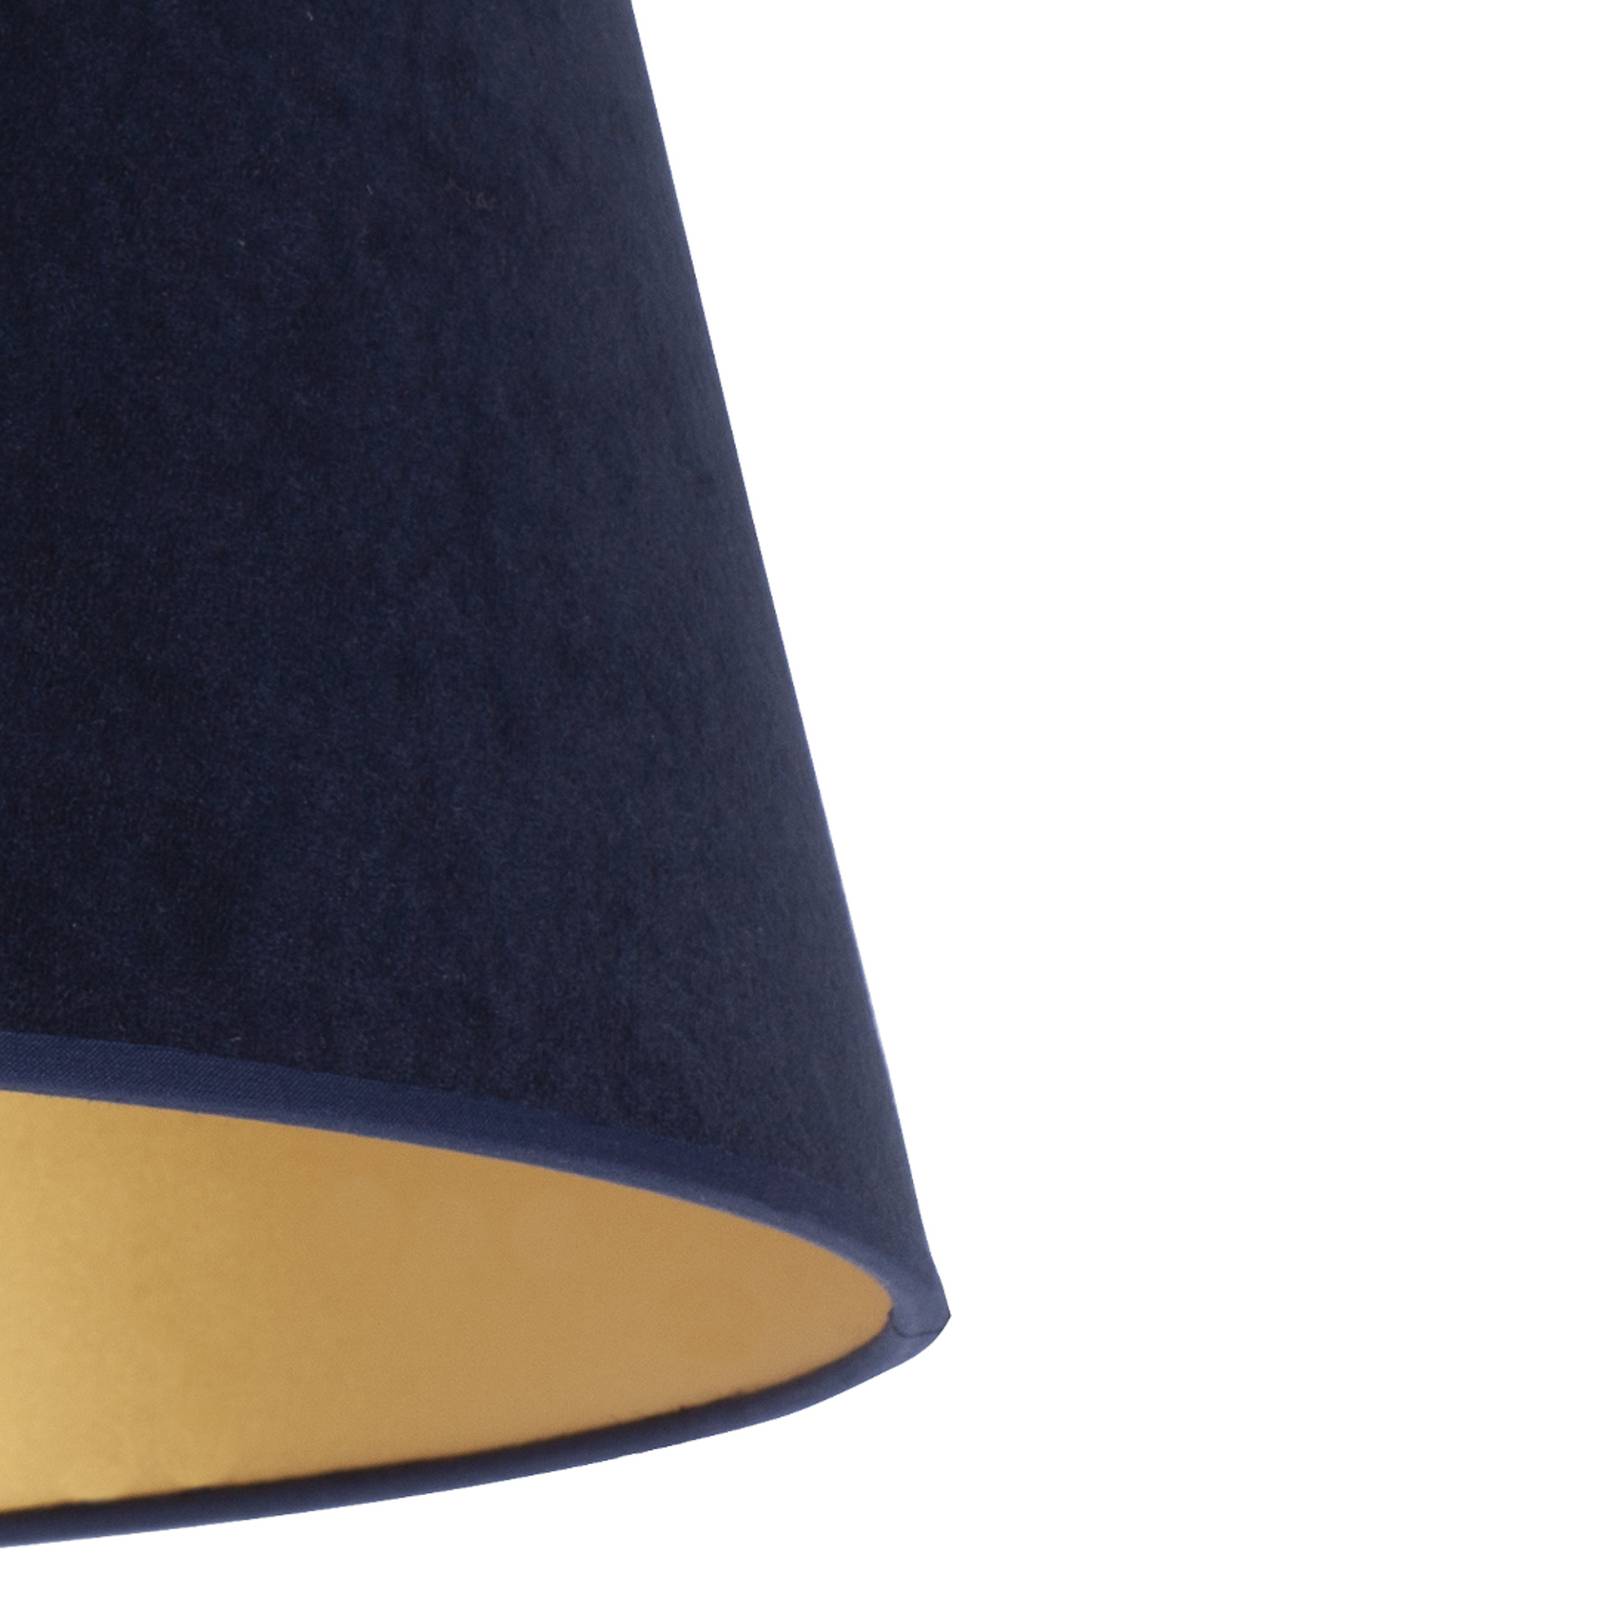 Cone lámpaernyő 22,5 cm magas, sötétkék/arany